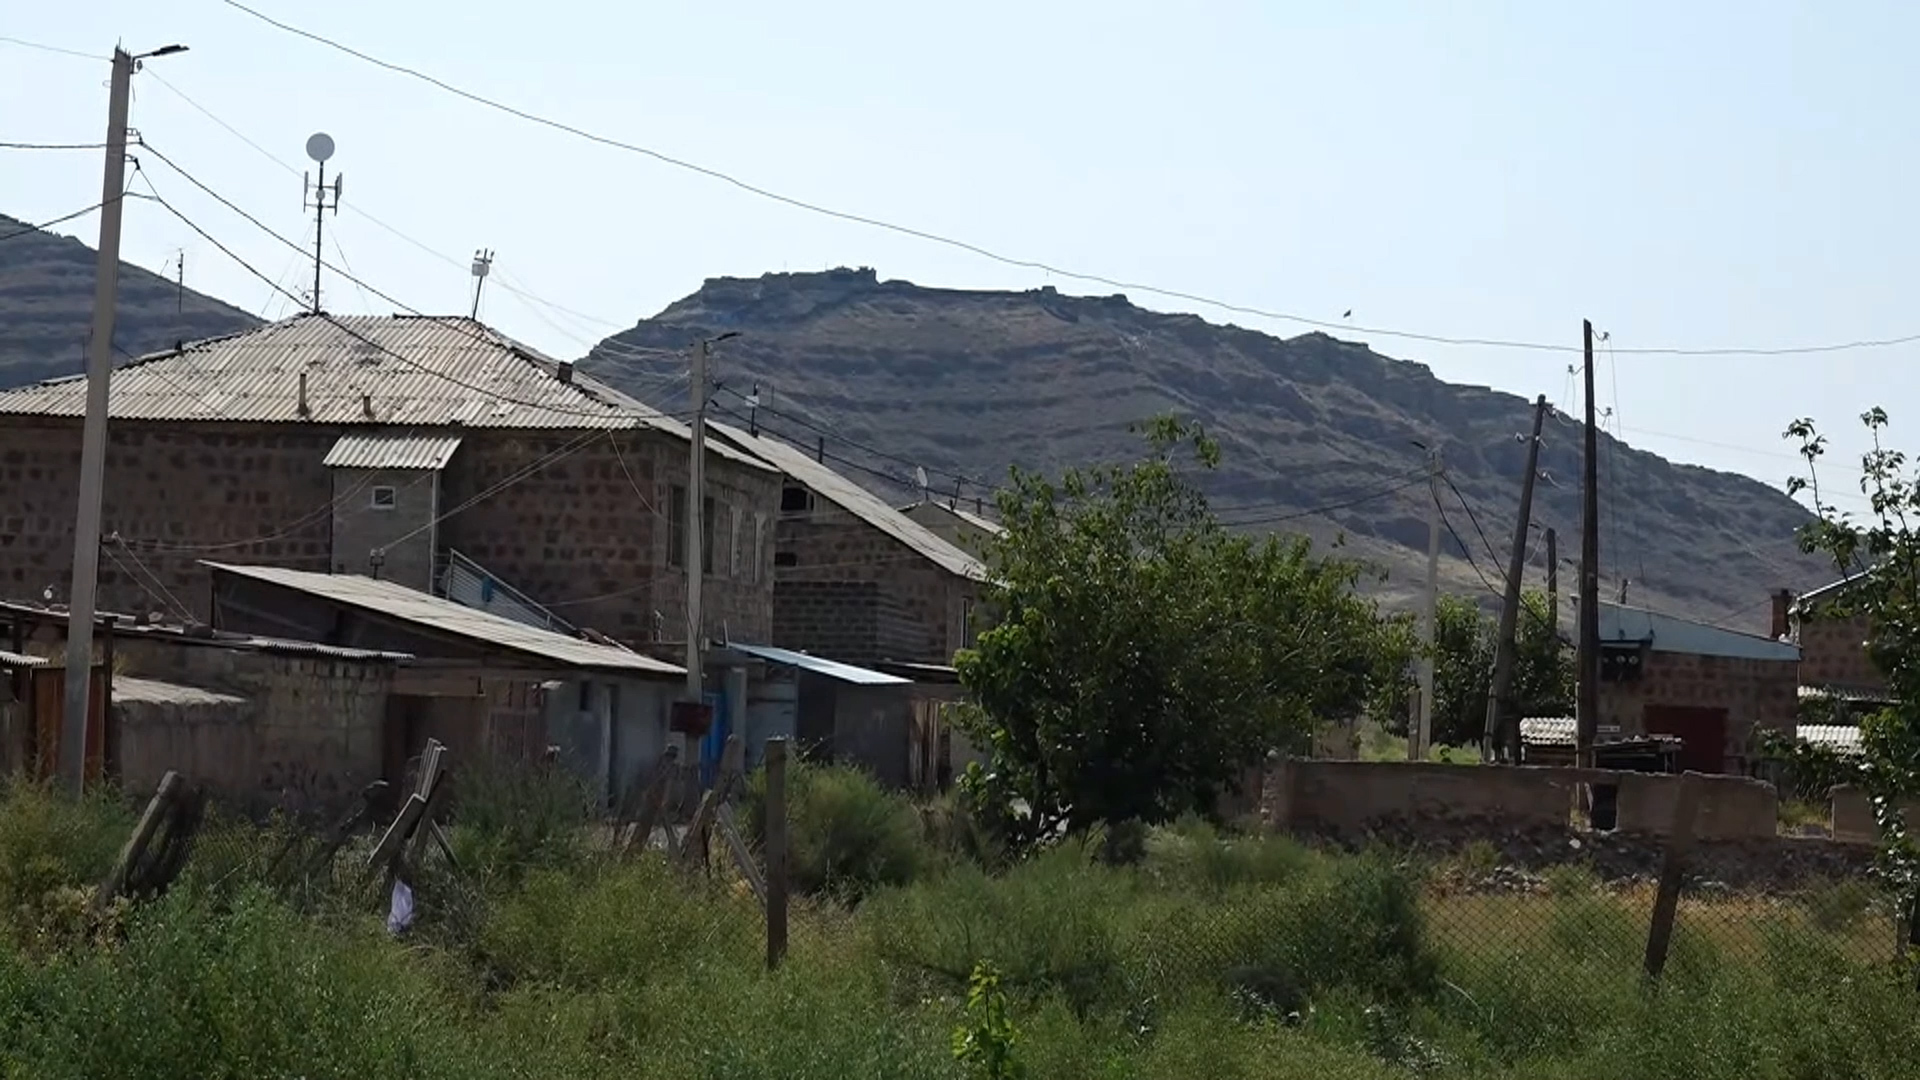 “Azerbaijan fires on Yeraskh border to pressure Armenia to make a decision”